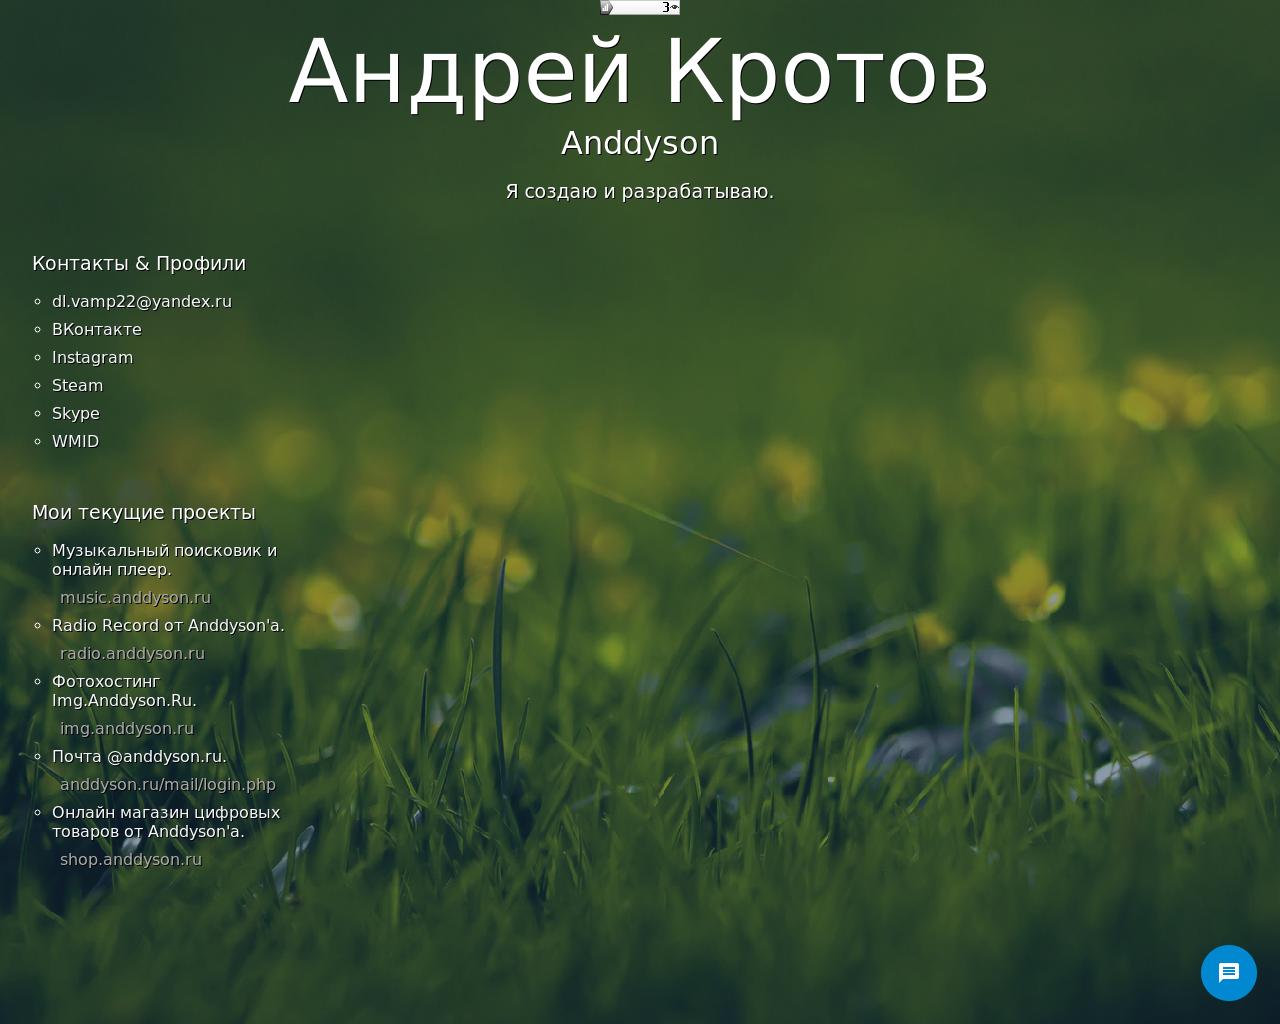 Изображение сайта anddyson.ru в разрешении 1280x1024